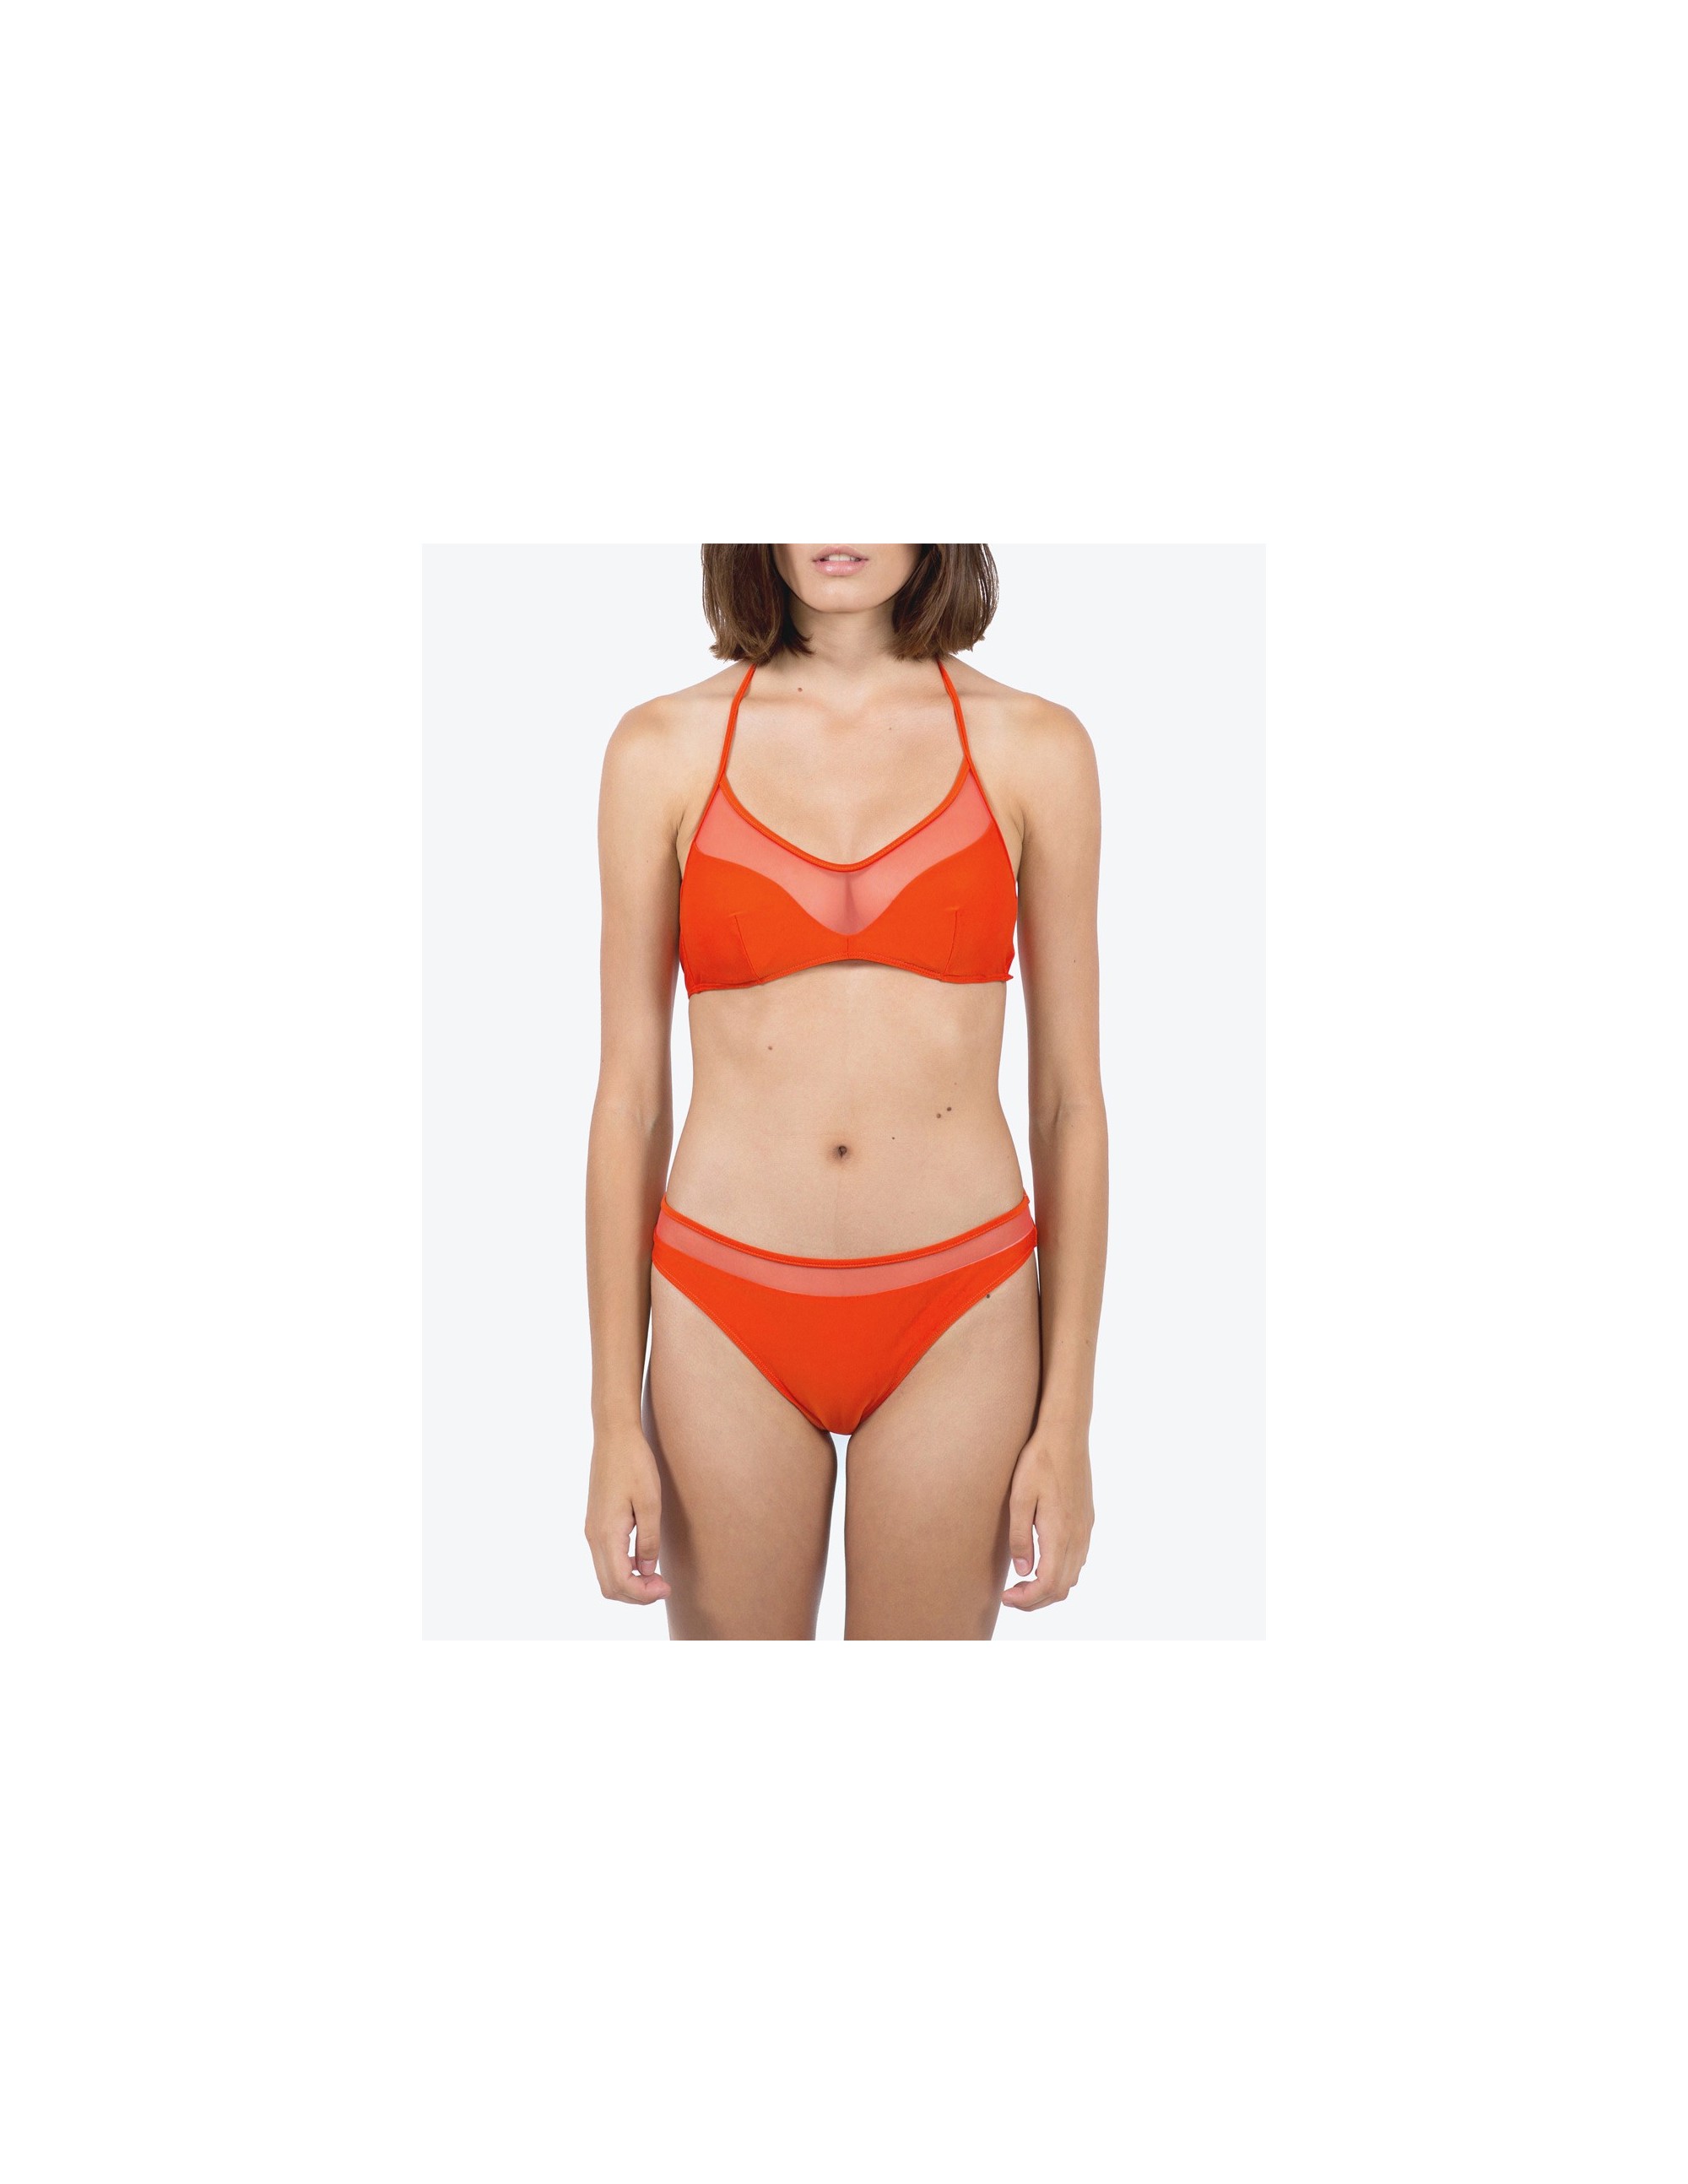 SAONA bikini top - CHARACTER RED